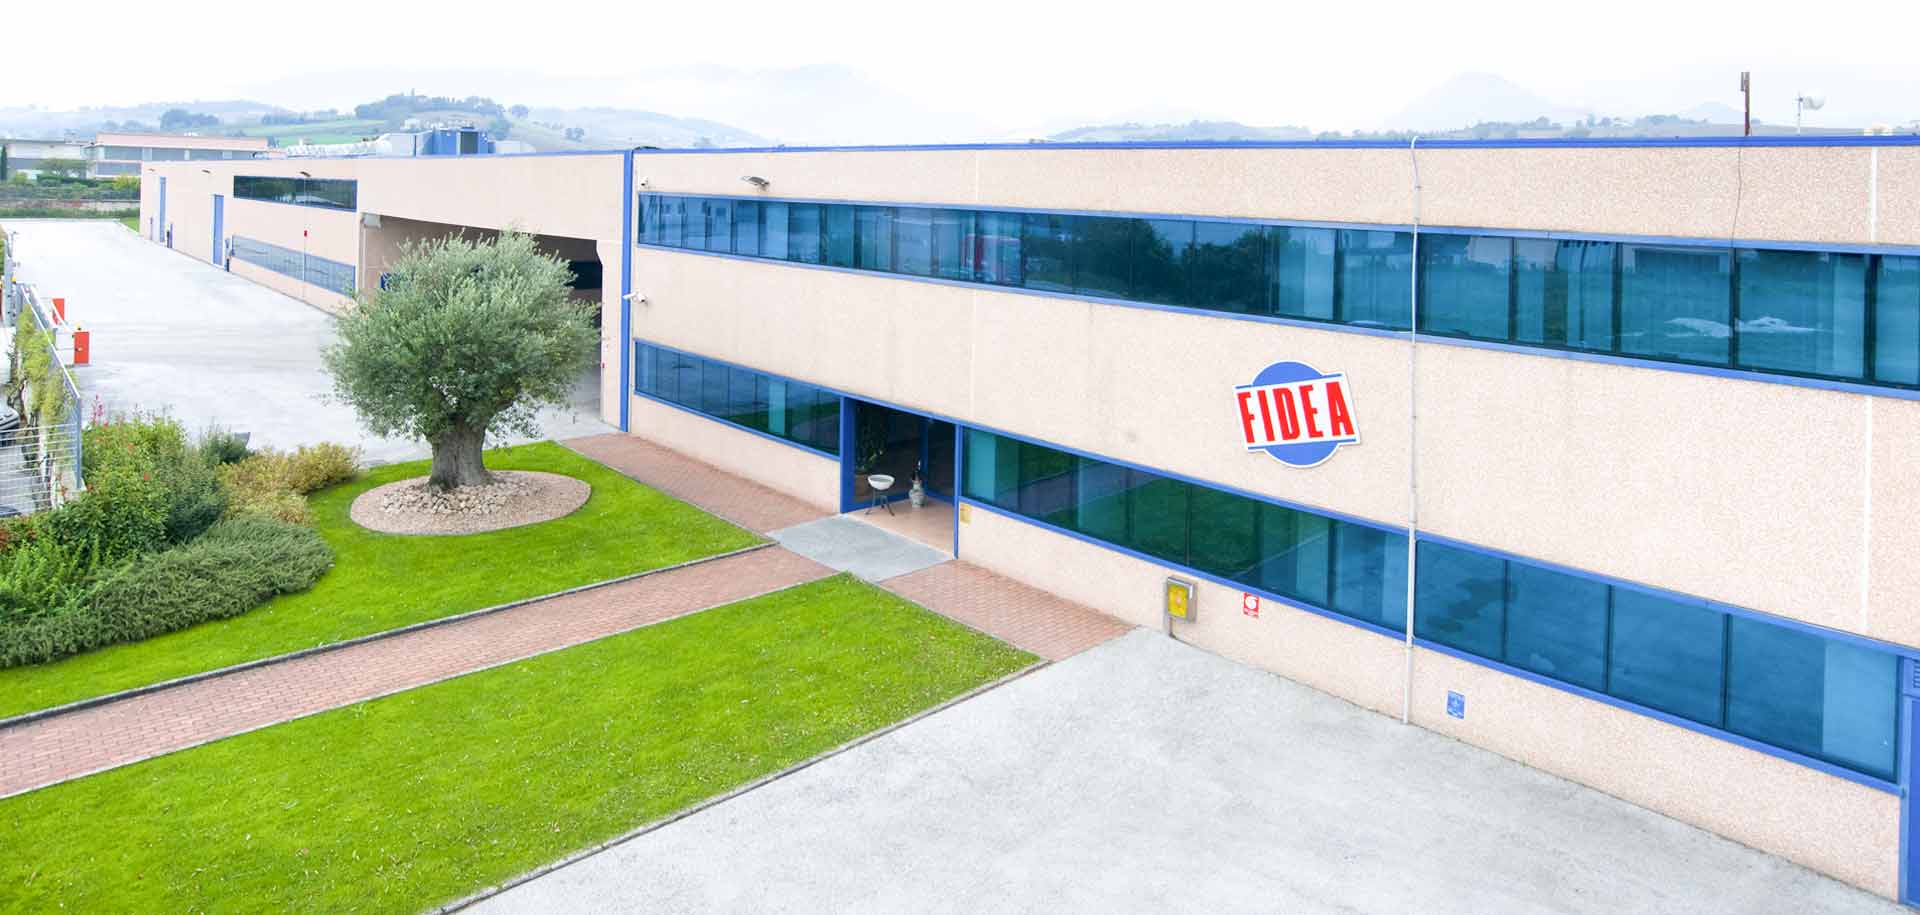 fidea headquarters